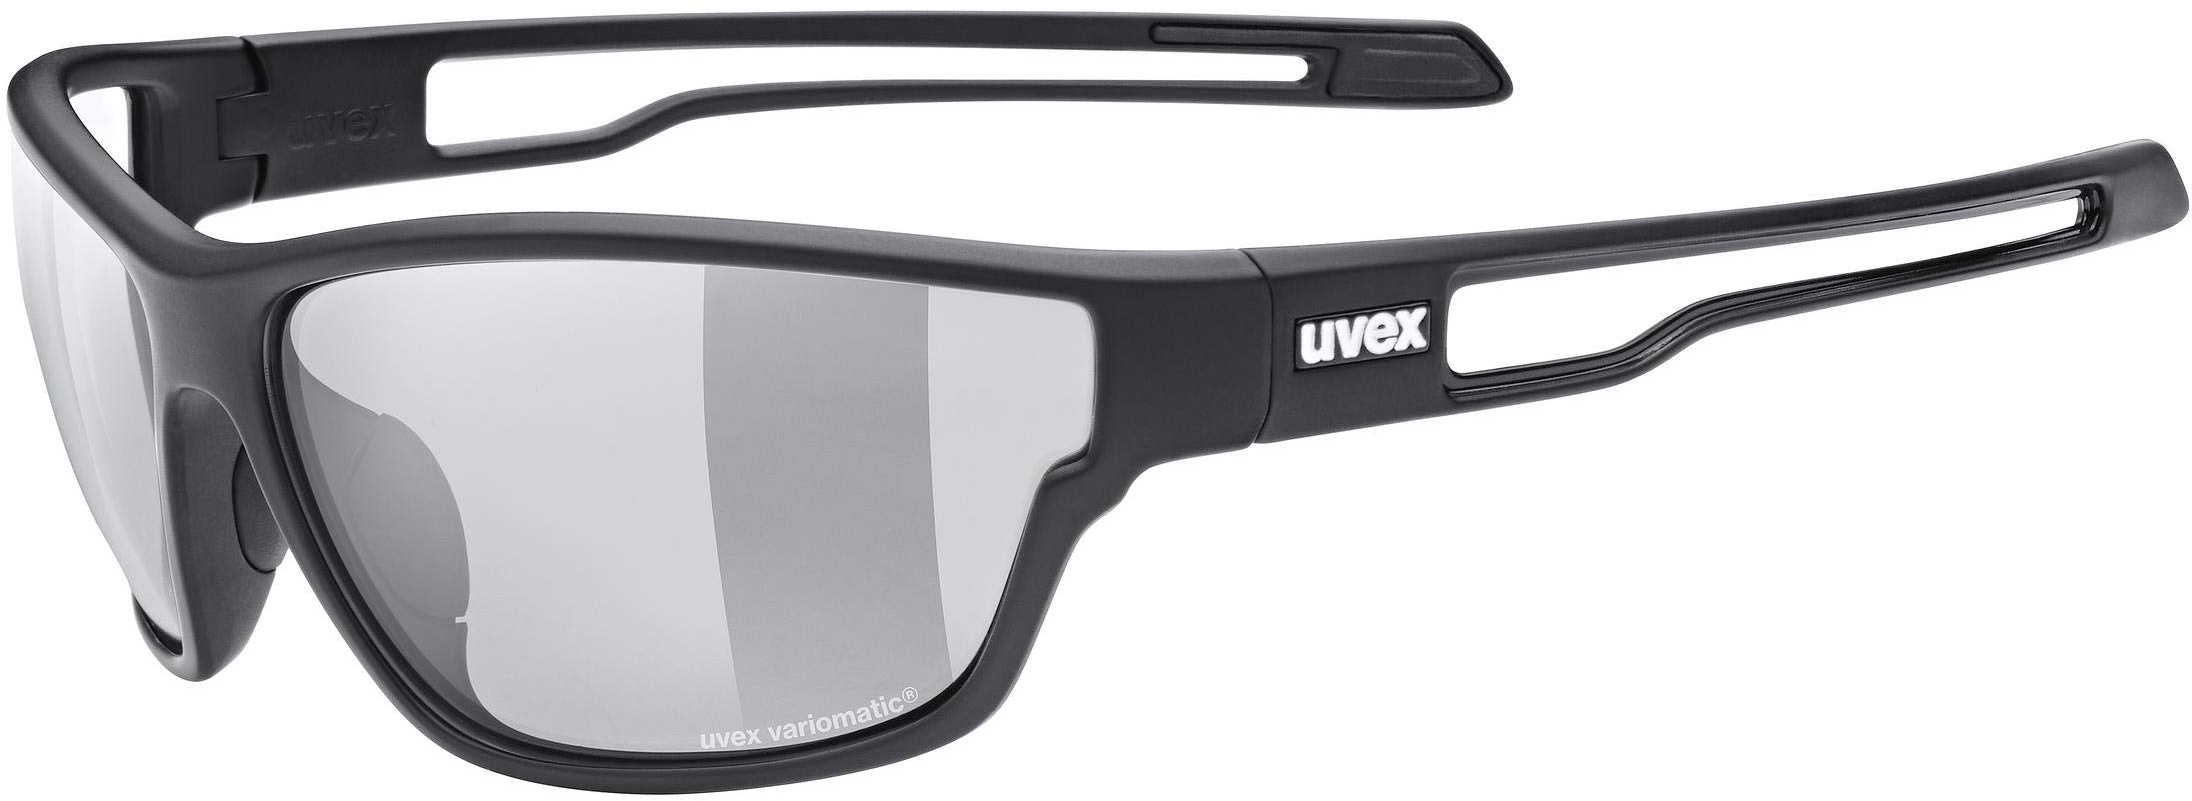 uvex sportstyle 806 V - Outdoorbrille für Damen und Herren - selbsttönend - beschlagfrei - black matt/smoke - one size